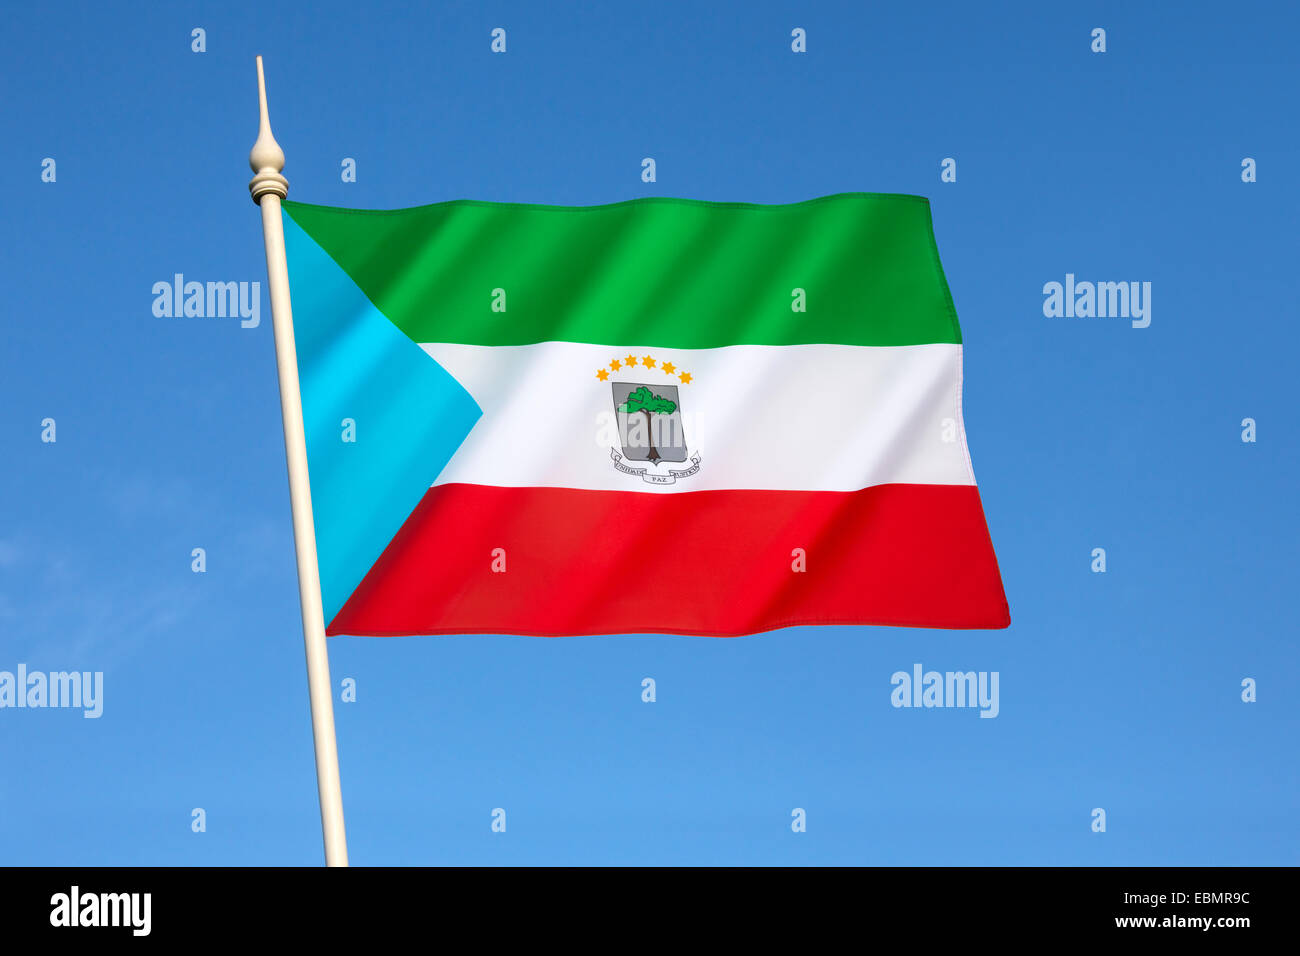 The flag of Equatorial Guinea Stock Photo